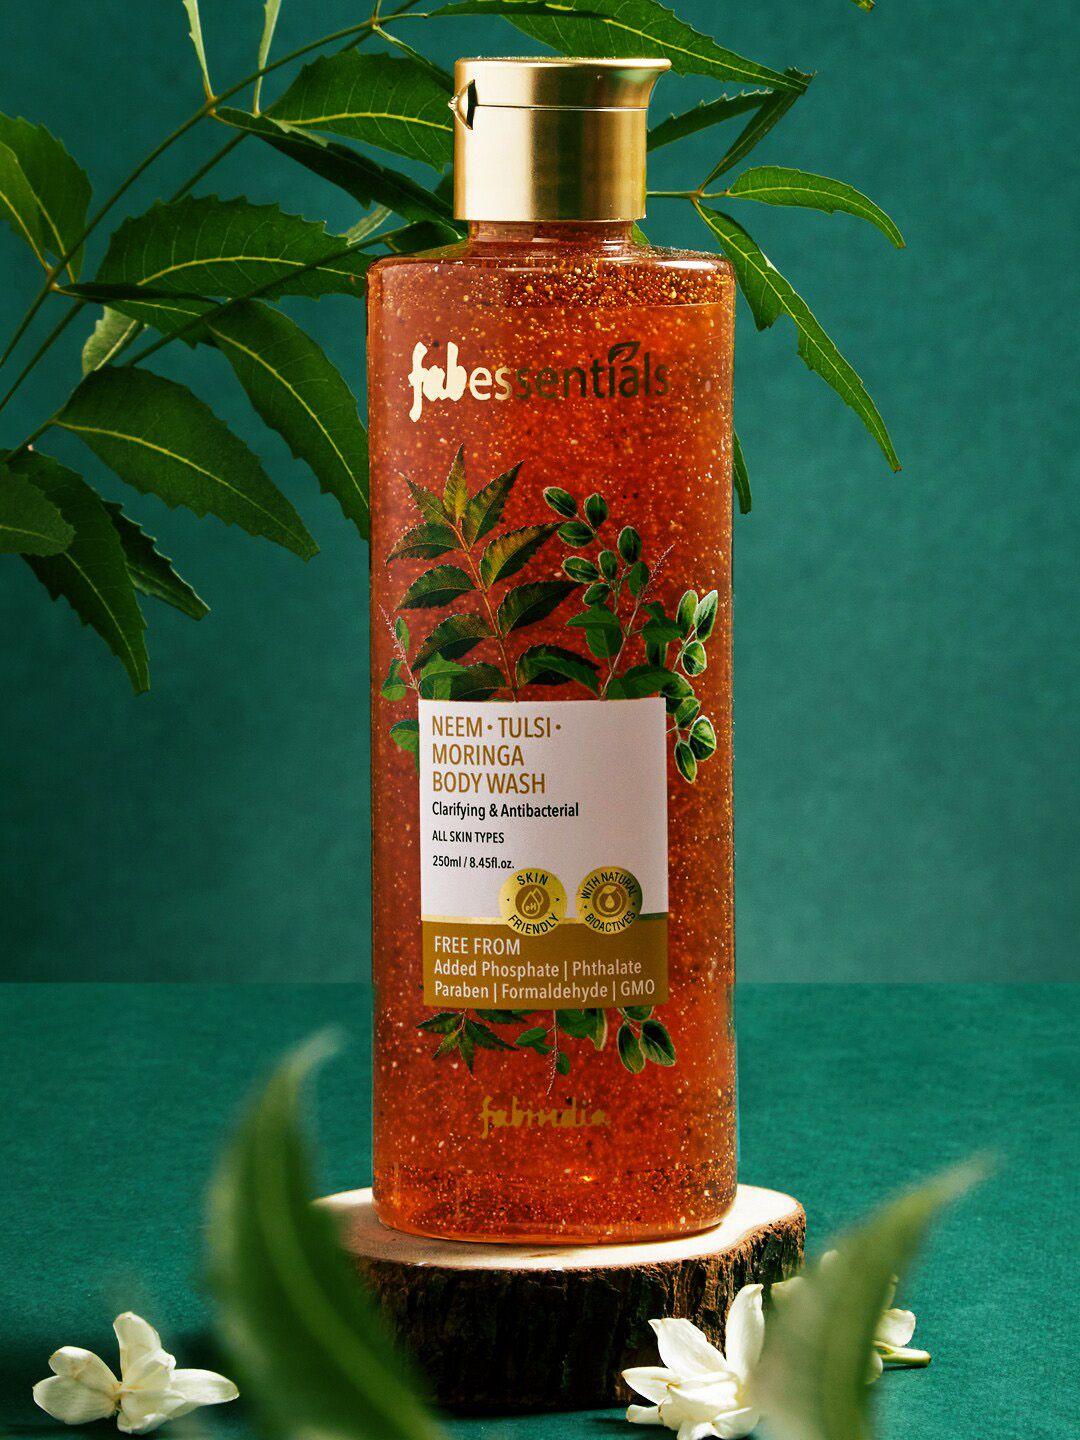 fabindia fabessentials neem tulsi moringa body wash - 250 ml